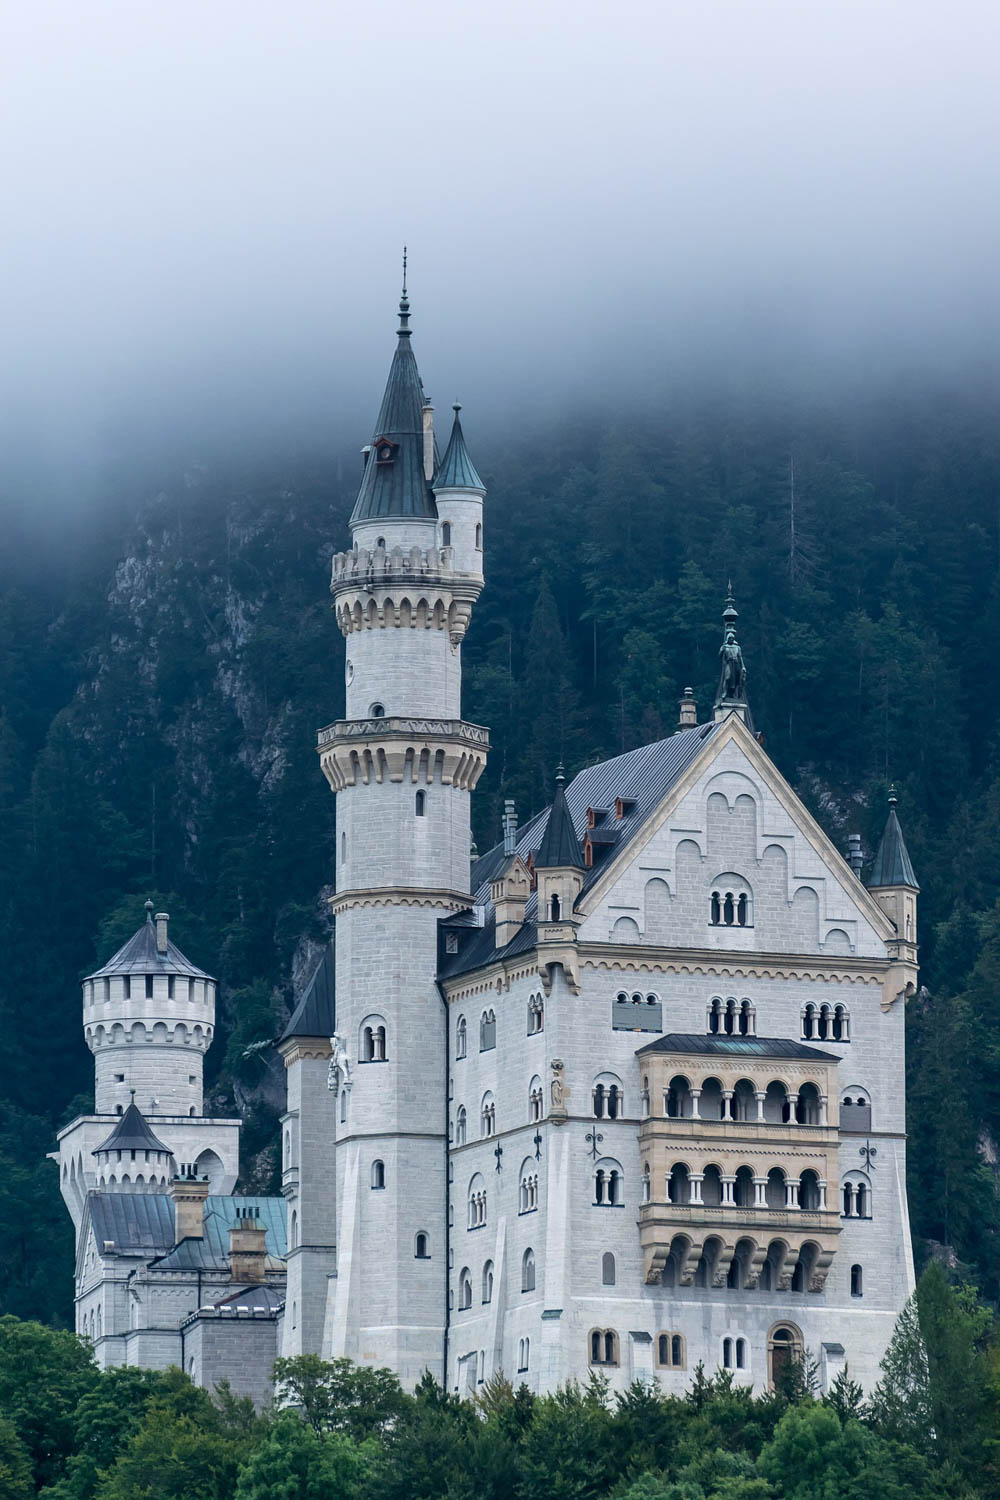 Close-up view | Where to stay near Neuschwanstein Castle: 12 Best Hotels and Airbnbs in Hohenschwangau, Schwangau, and Füssen